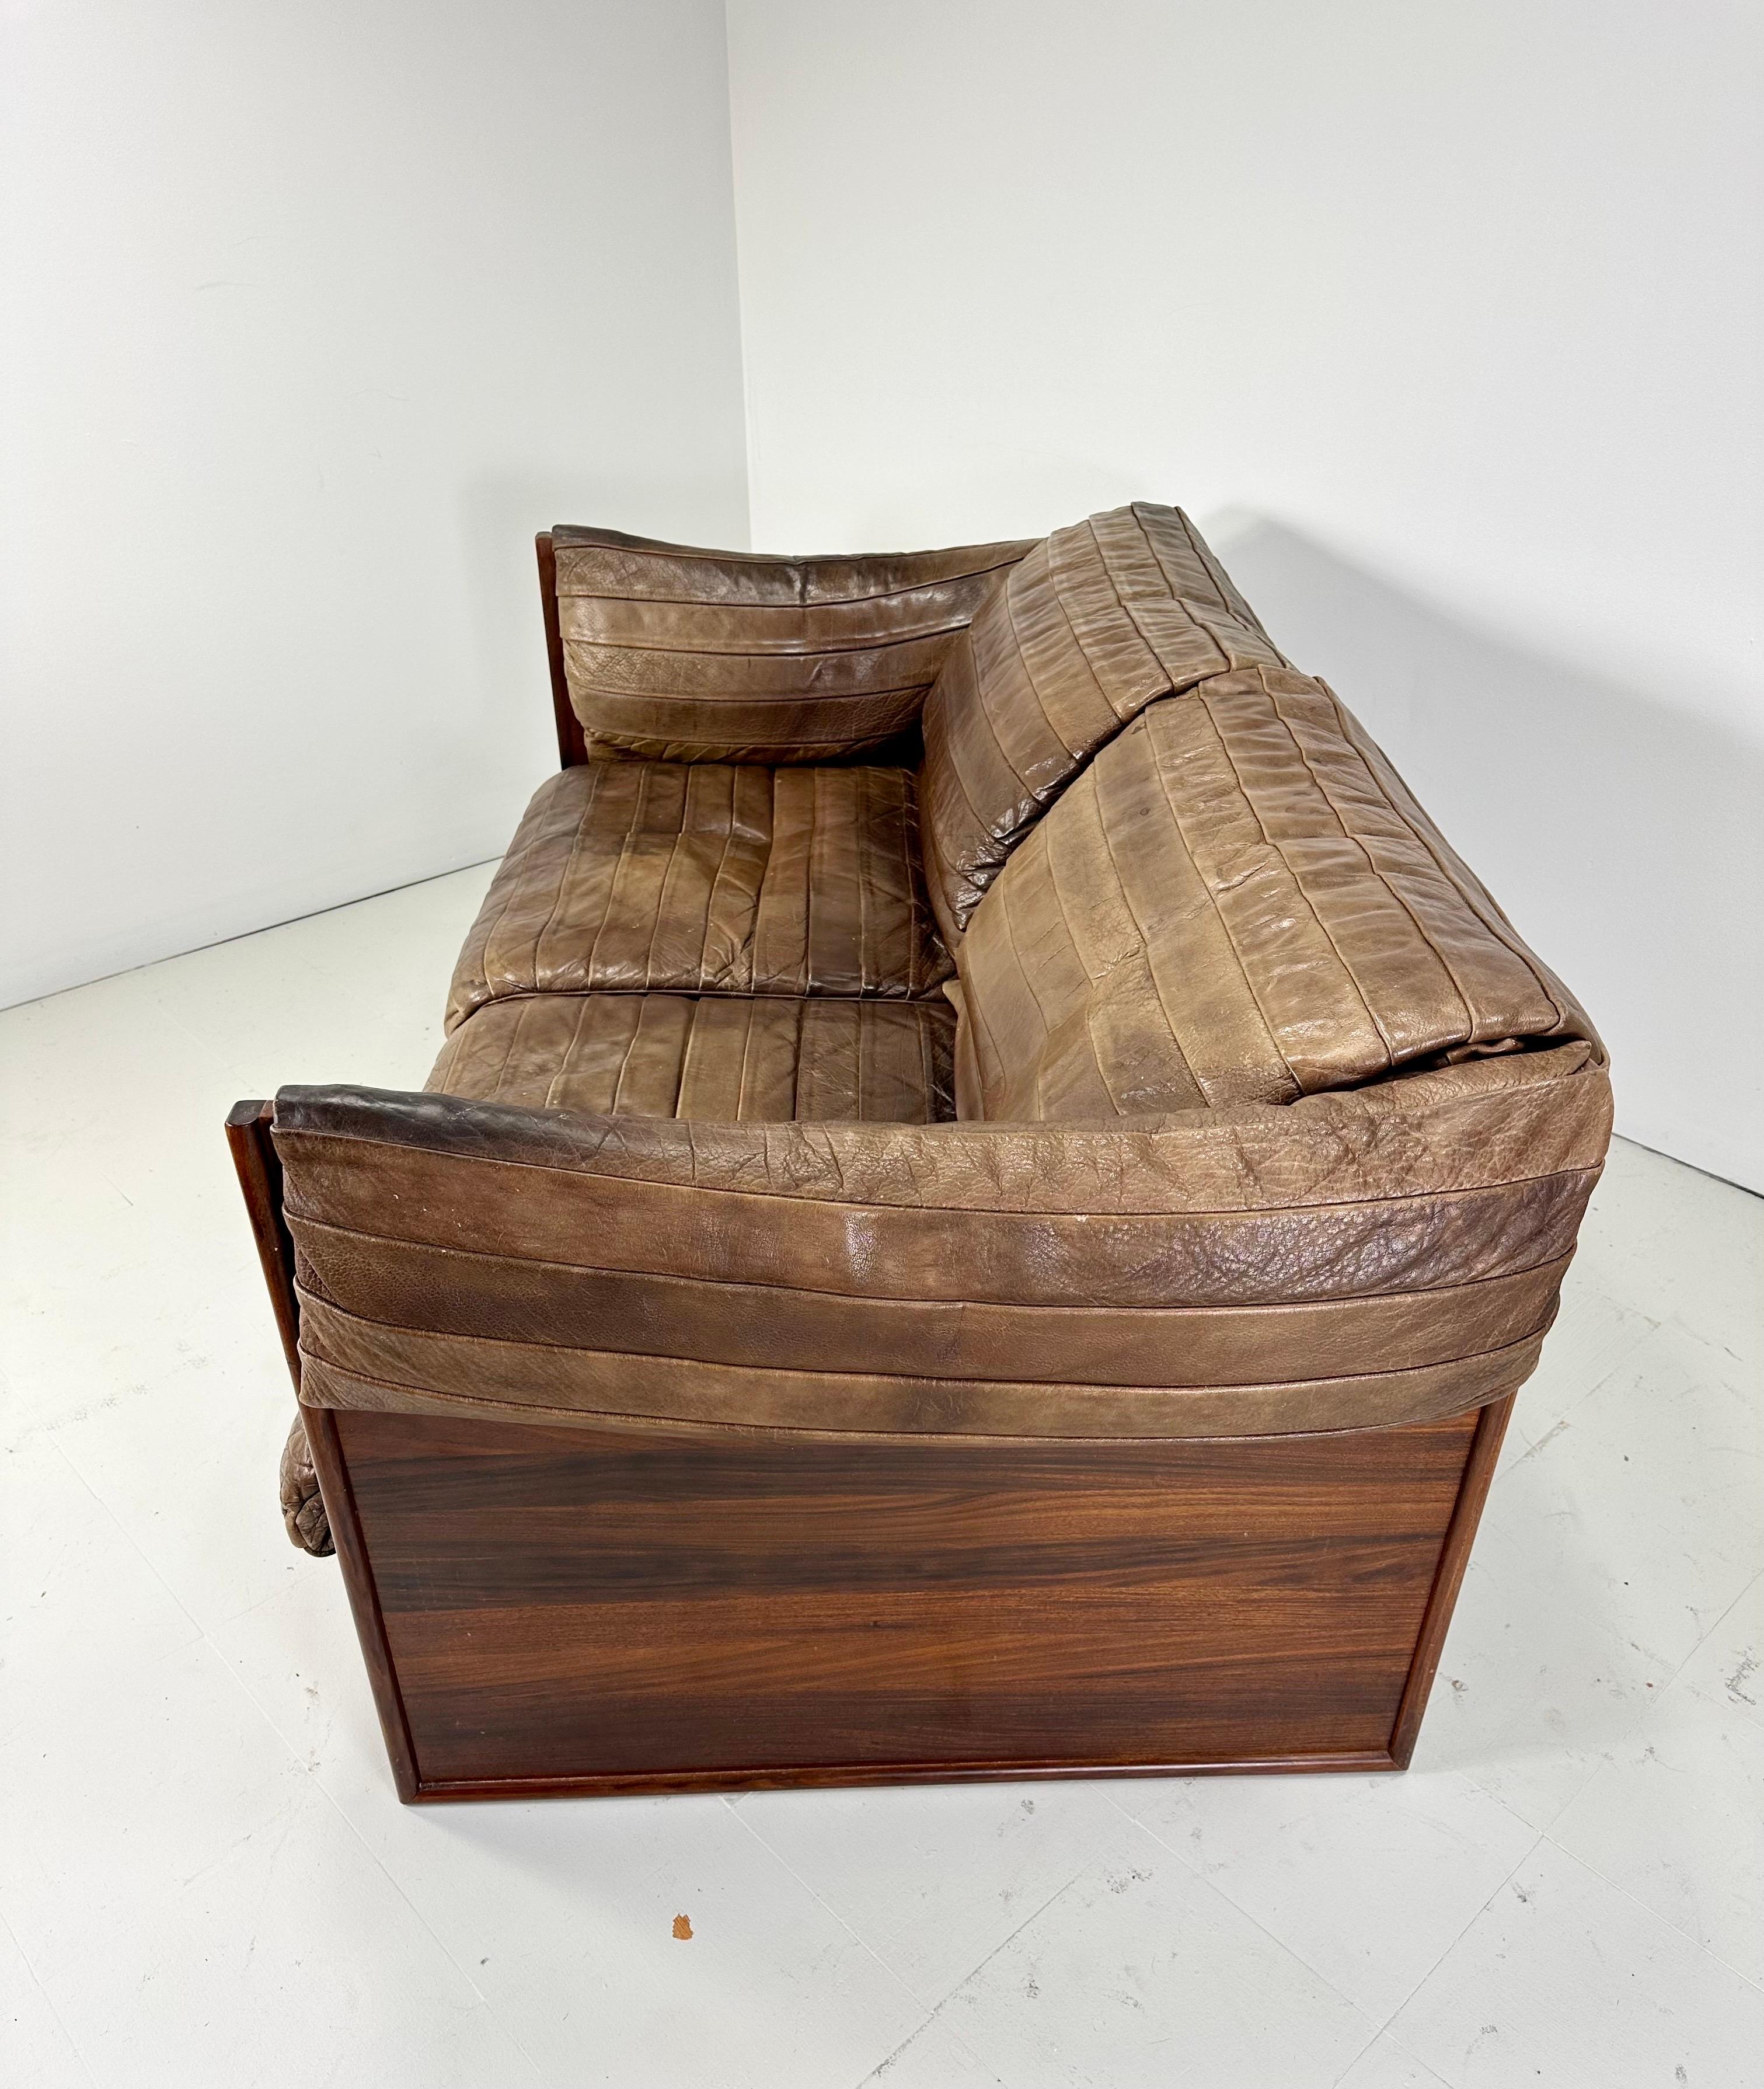 Skipper Mobler Rosewood Box settee. mit hochwertigem Buffalo Leder. Einzigartige Kissendesigns sorgen für ein wunderbares Design und hervorragenden Komfort. Dänemark, 1960er Jahre  Auch ein Sofa in voller Länge ist verfügbar.

Lieferung in den